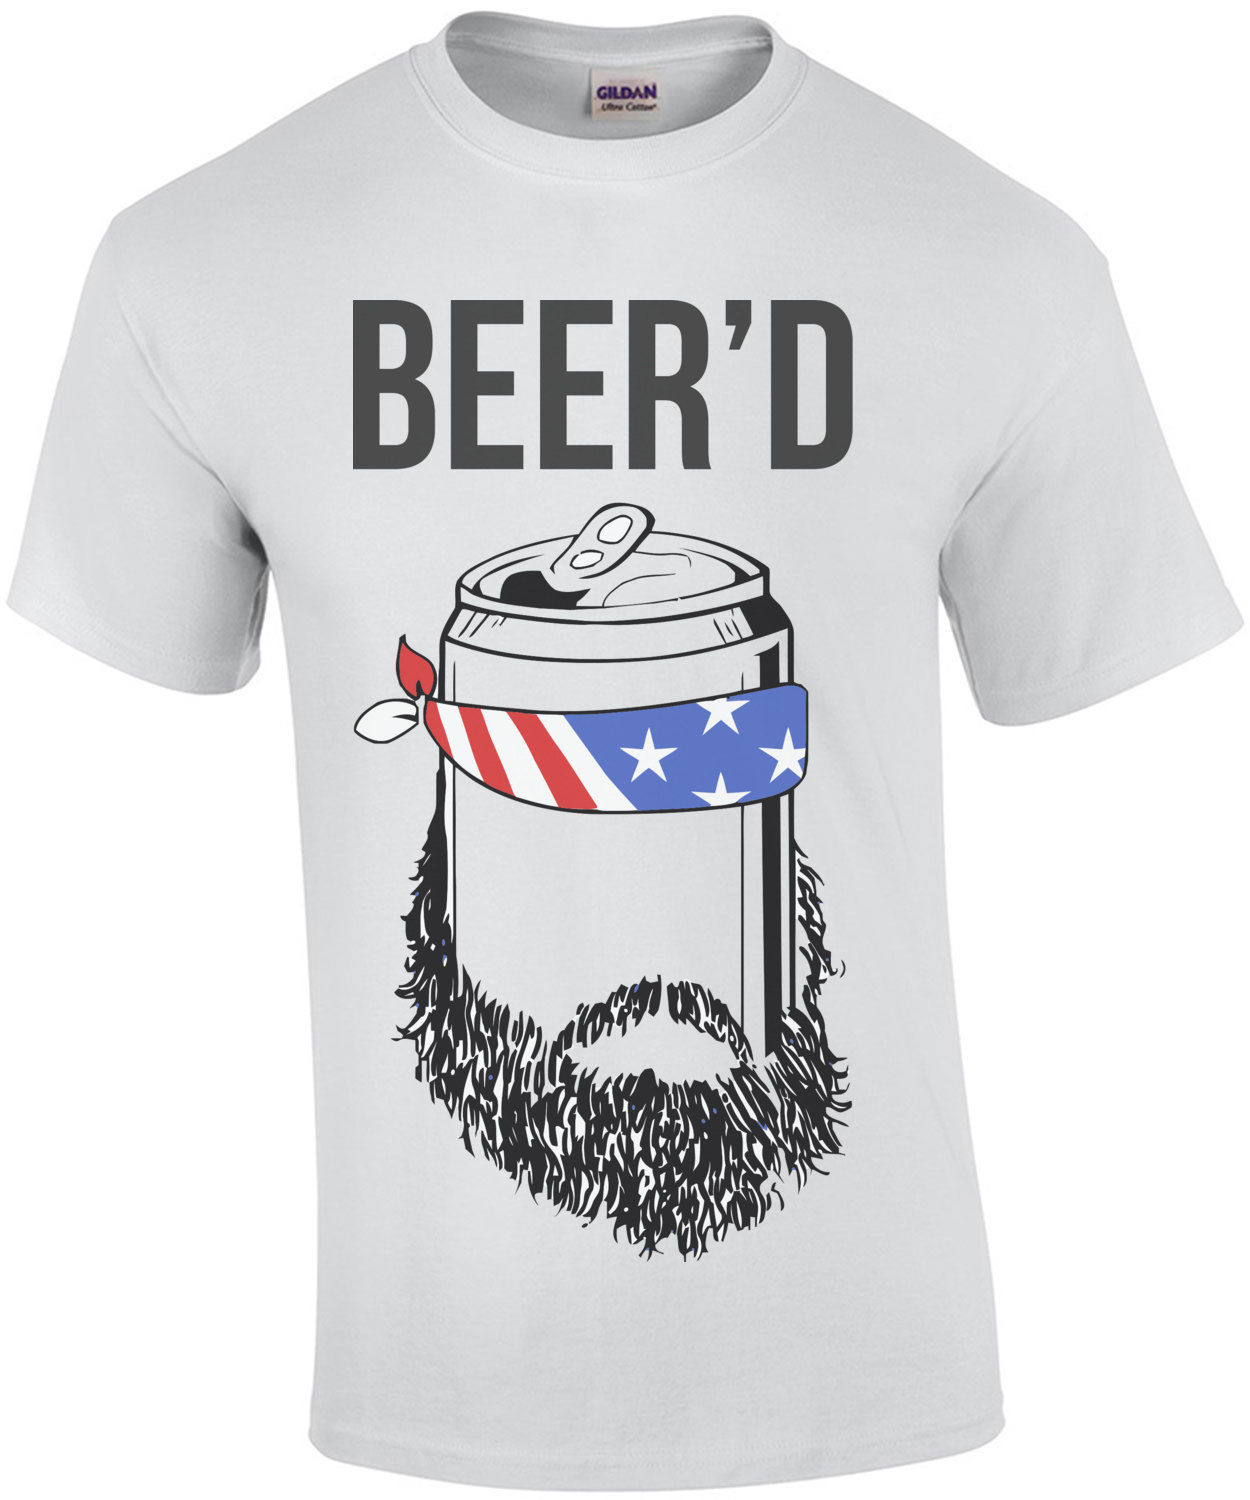 beerd shirt